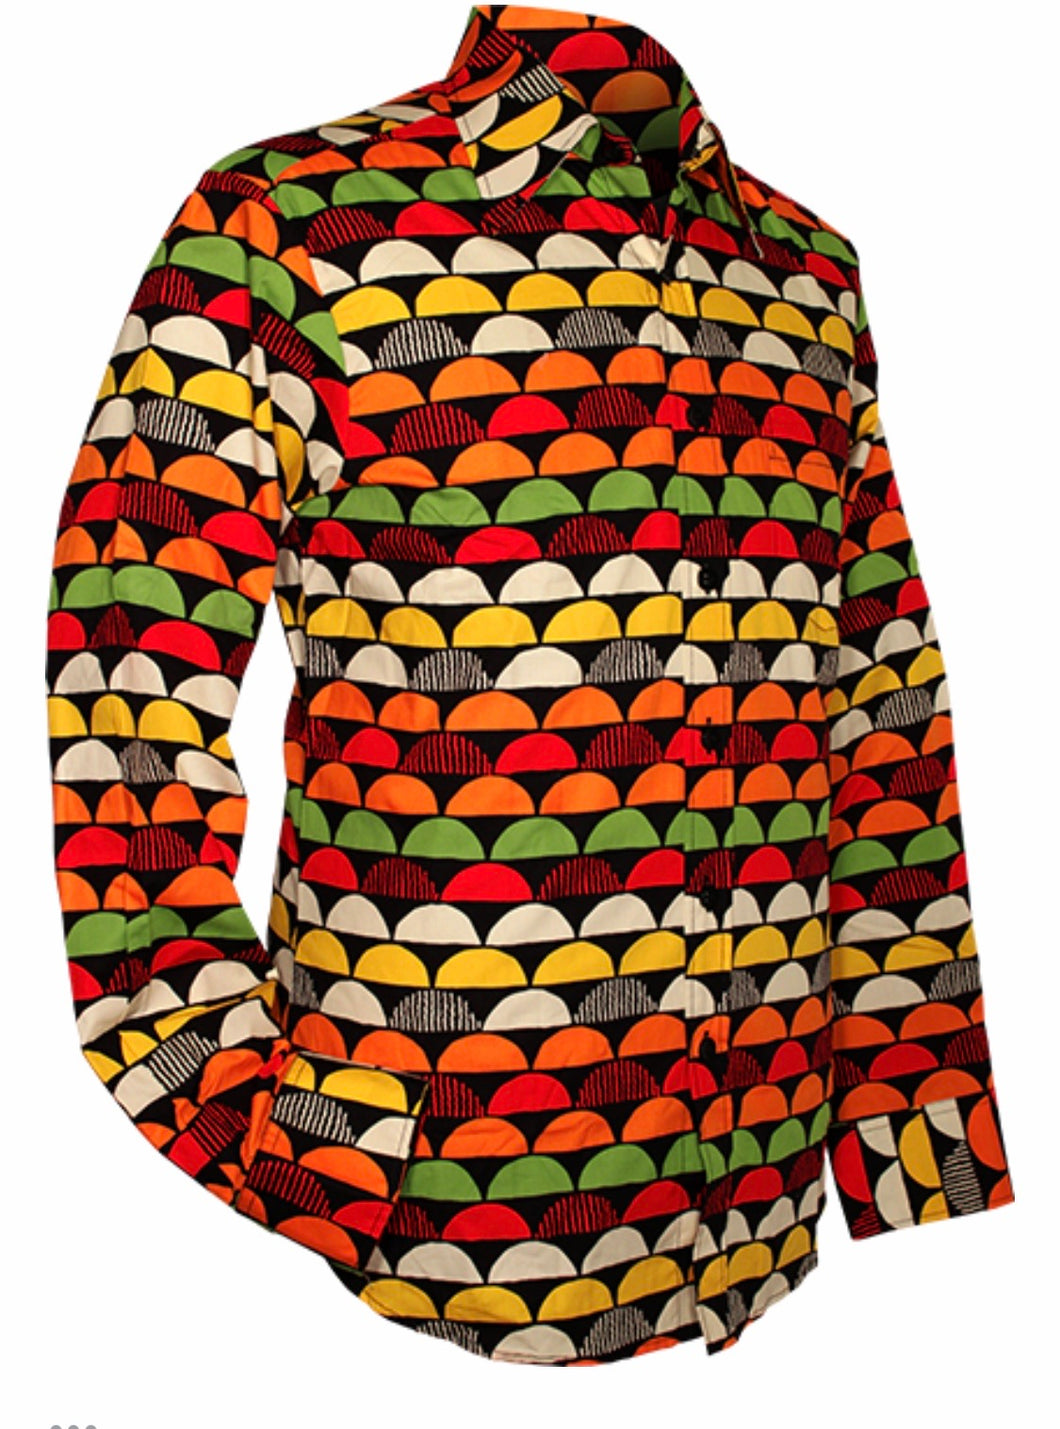 Sunset design long sleeved Retro 70s style shirt in Black & Orange